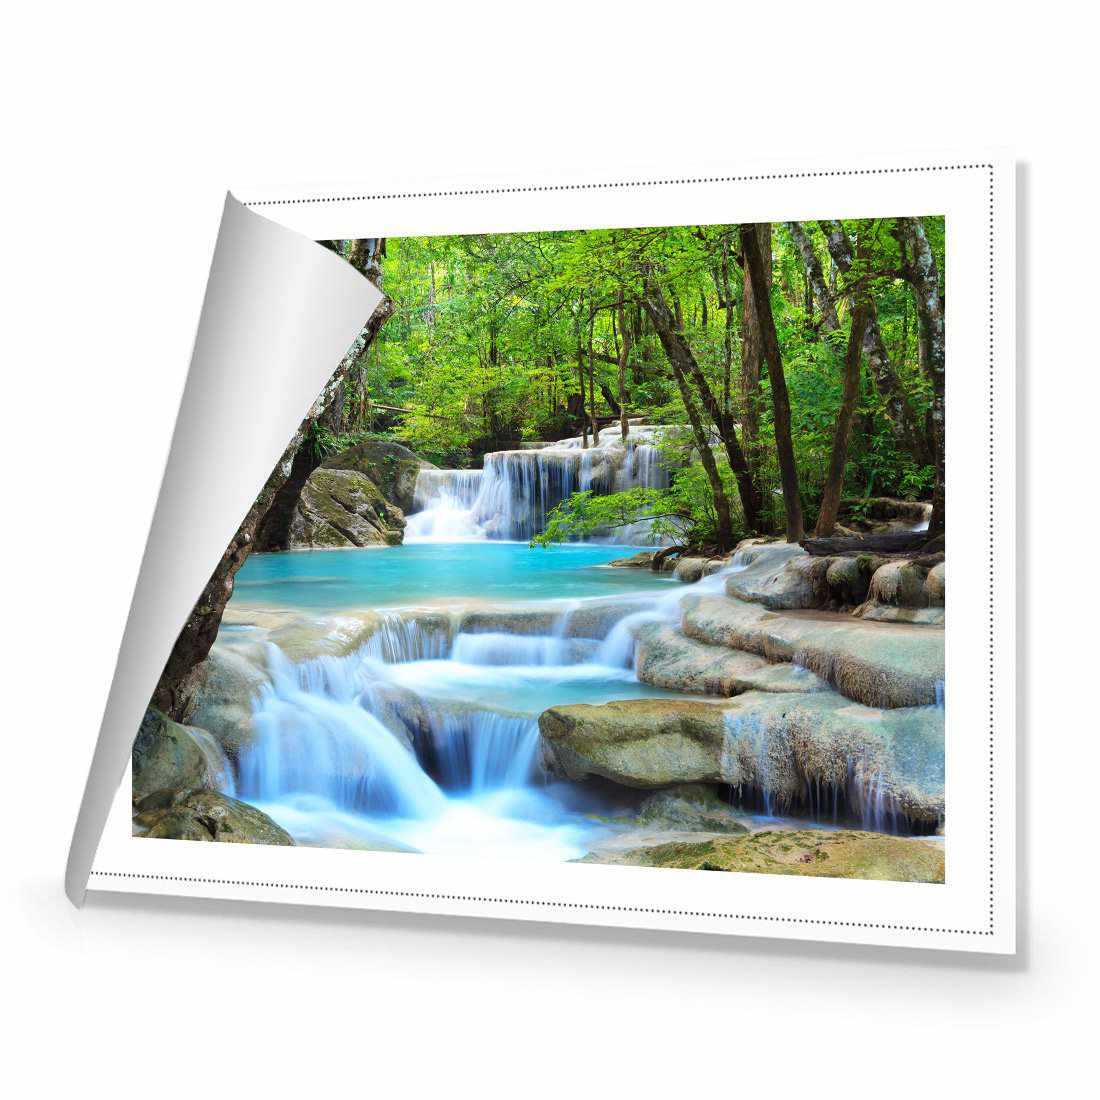 Soft Waterfalls Canvas Art-Canvas-Wall Art Designs-45x30cm-Rolled Canvas-Wall Art Designs